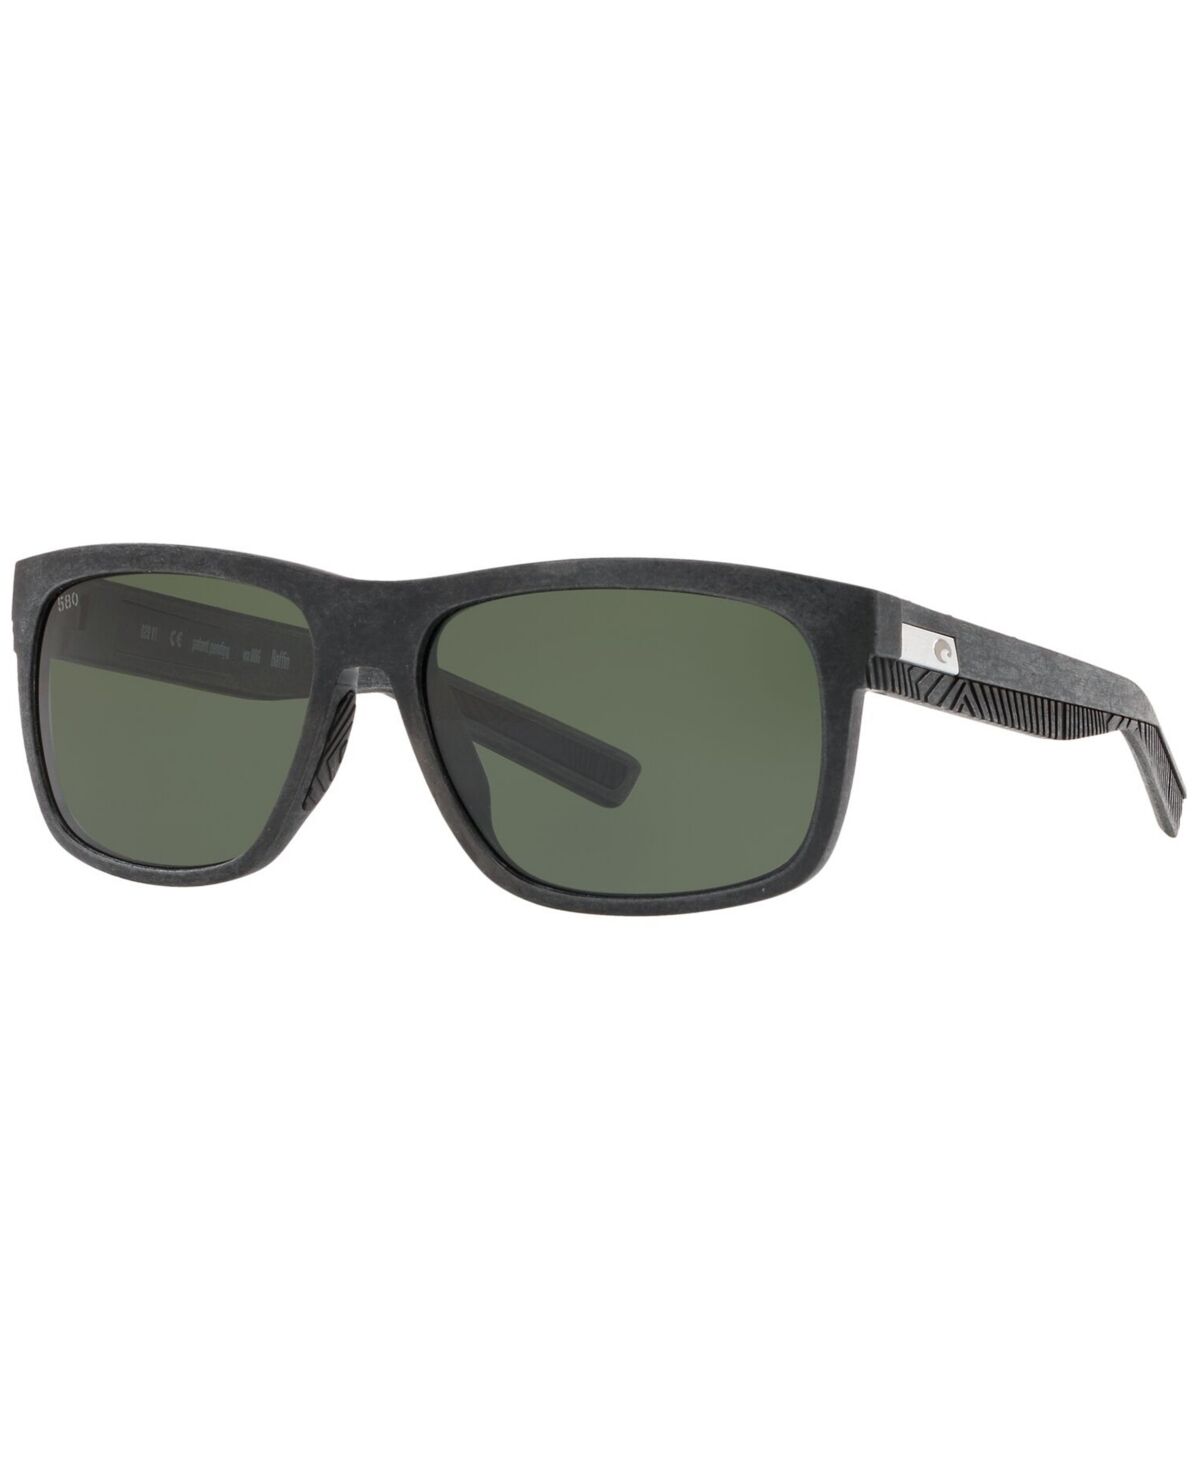 Costa Del Mar Men's Polarized Sunglasses - BLACK/GREY